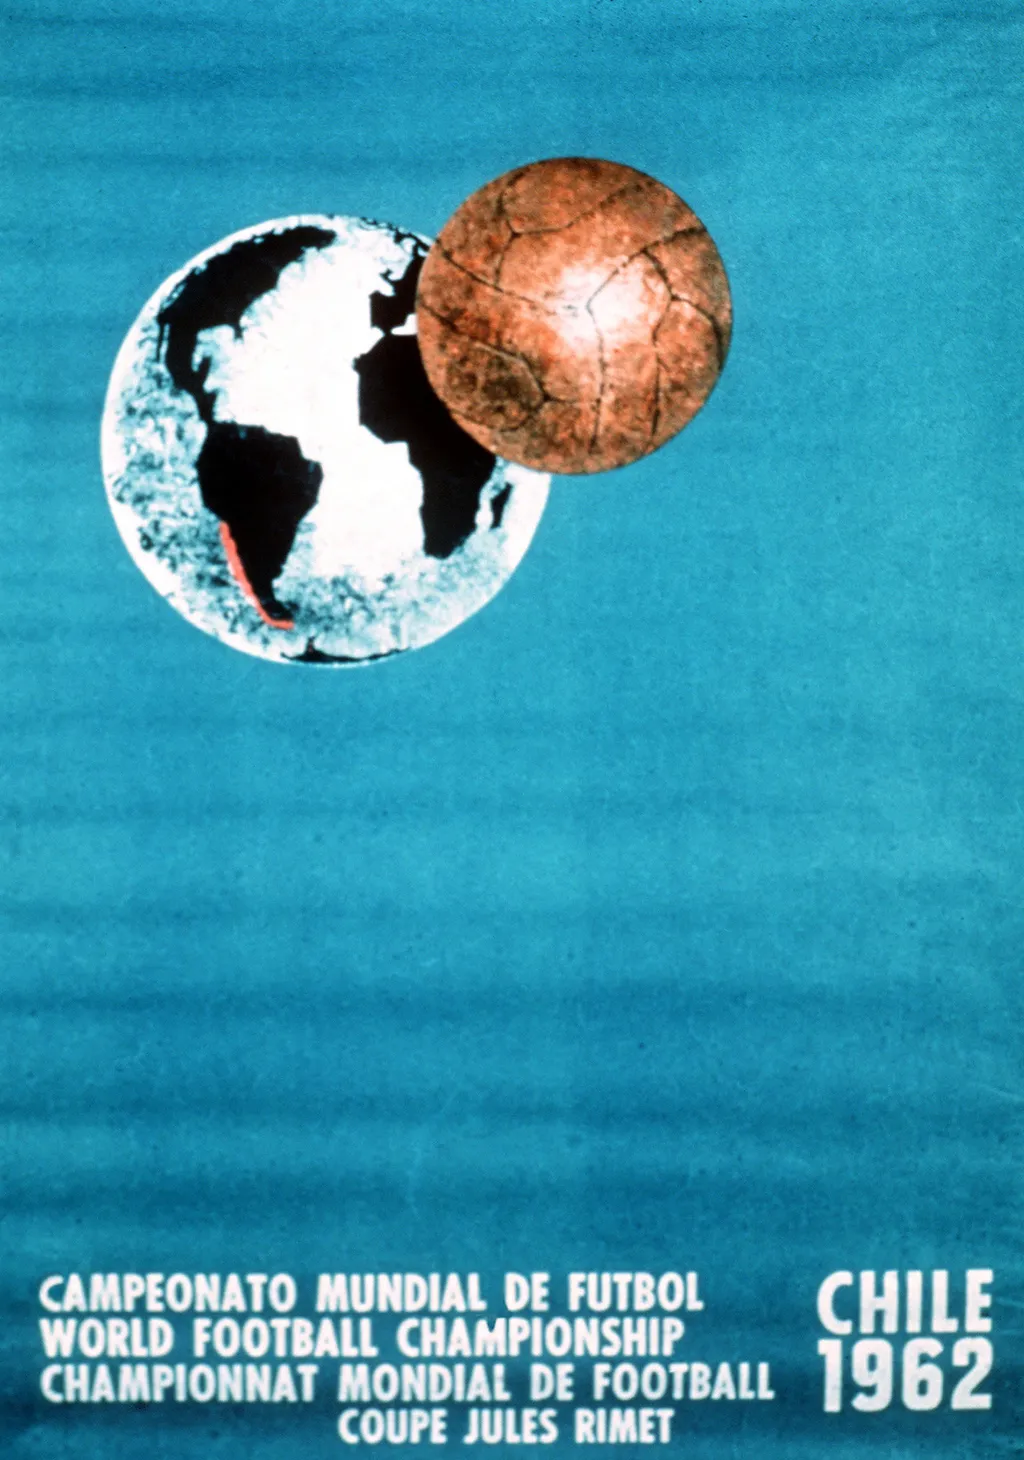 Labdarúgó-világbajnokság, labdarúgóvébé, futballvébé, labdarúgás, hivatalos plakát, poszter, 1962, Chile 